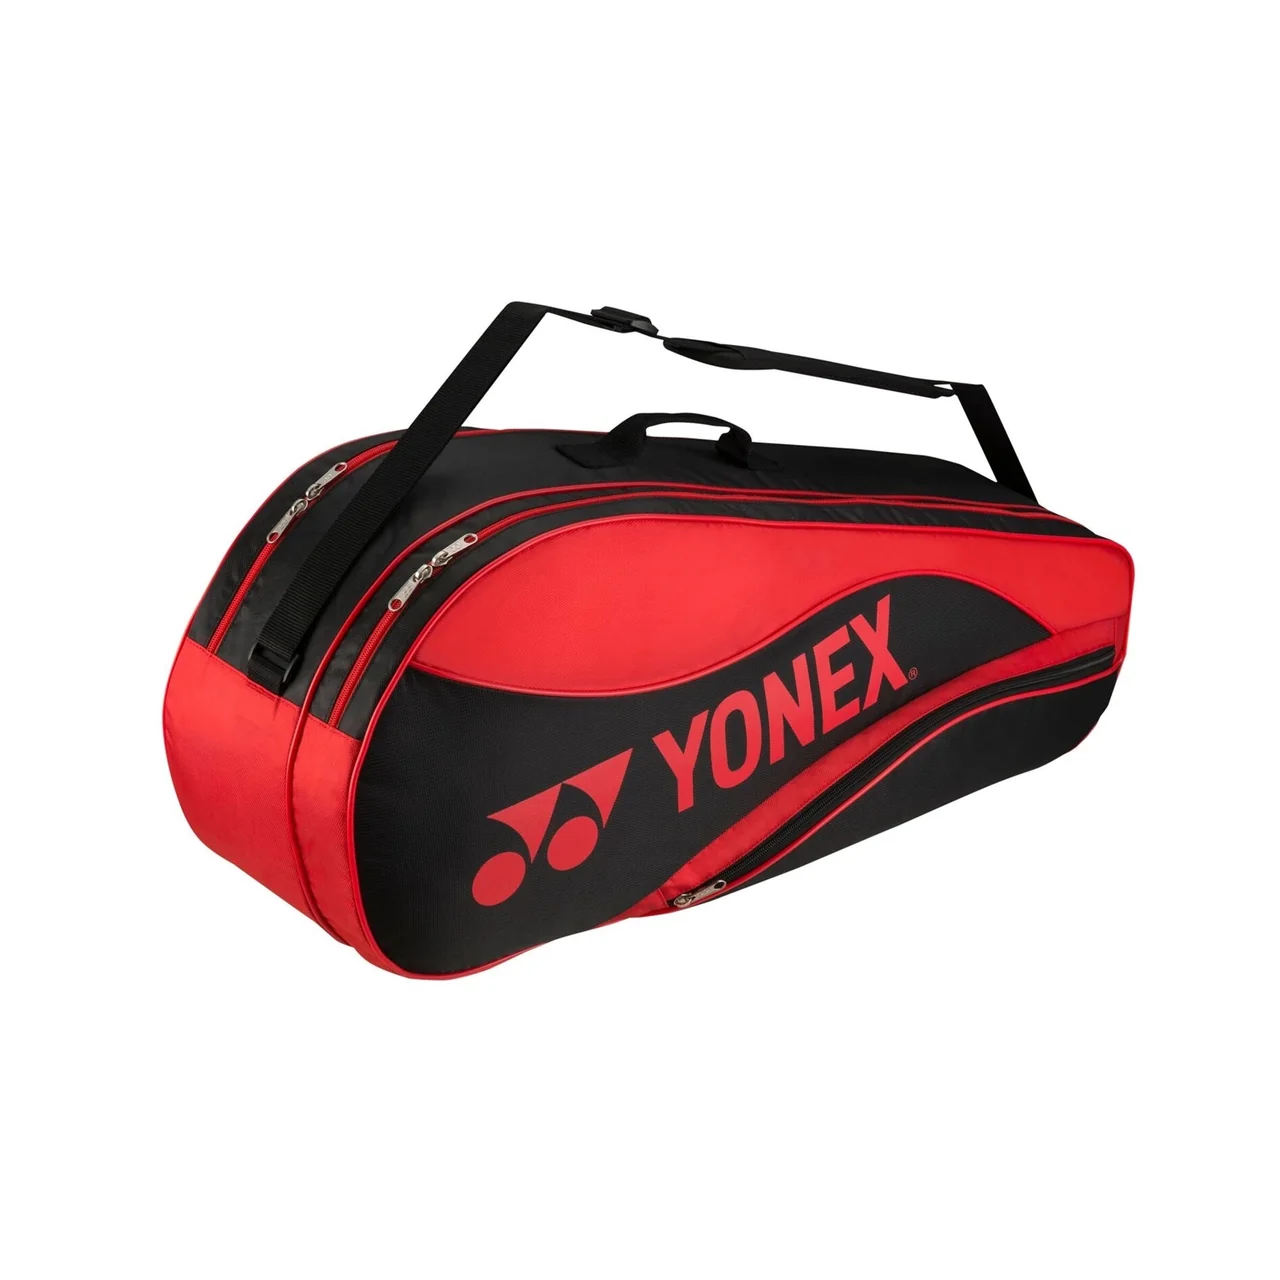 Yonex Team Bag x6 Bright Red